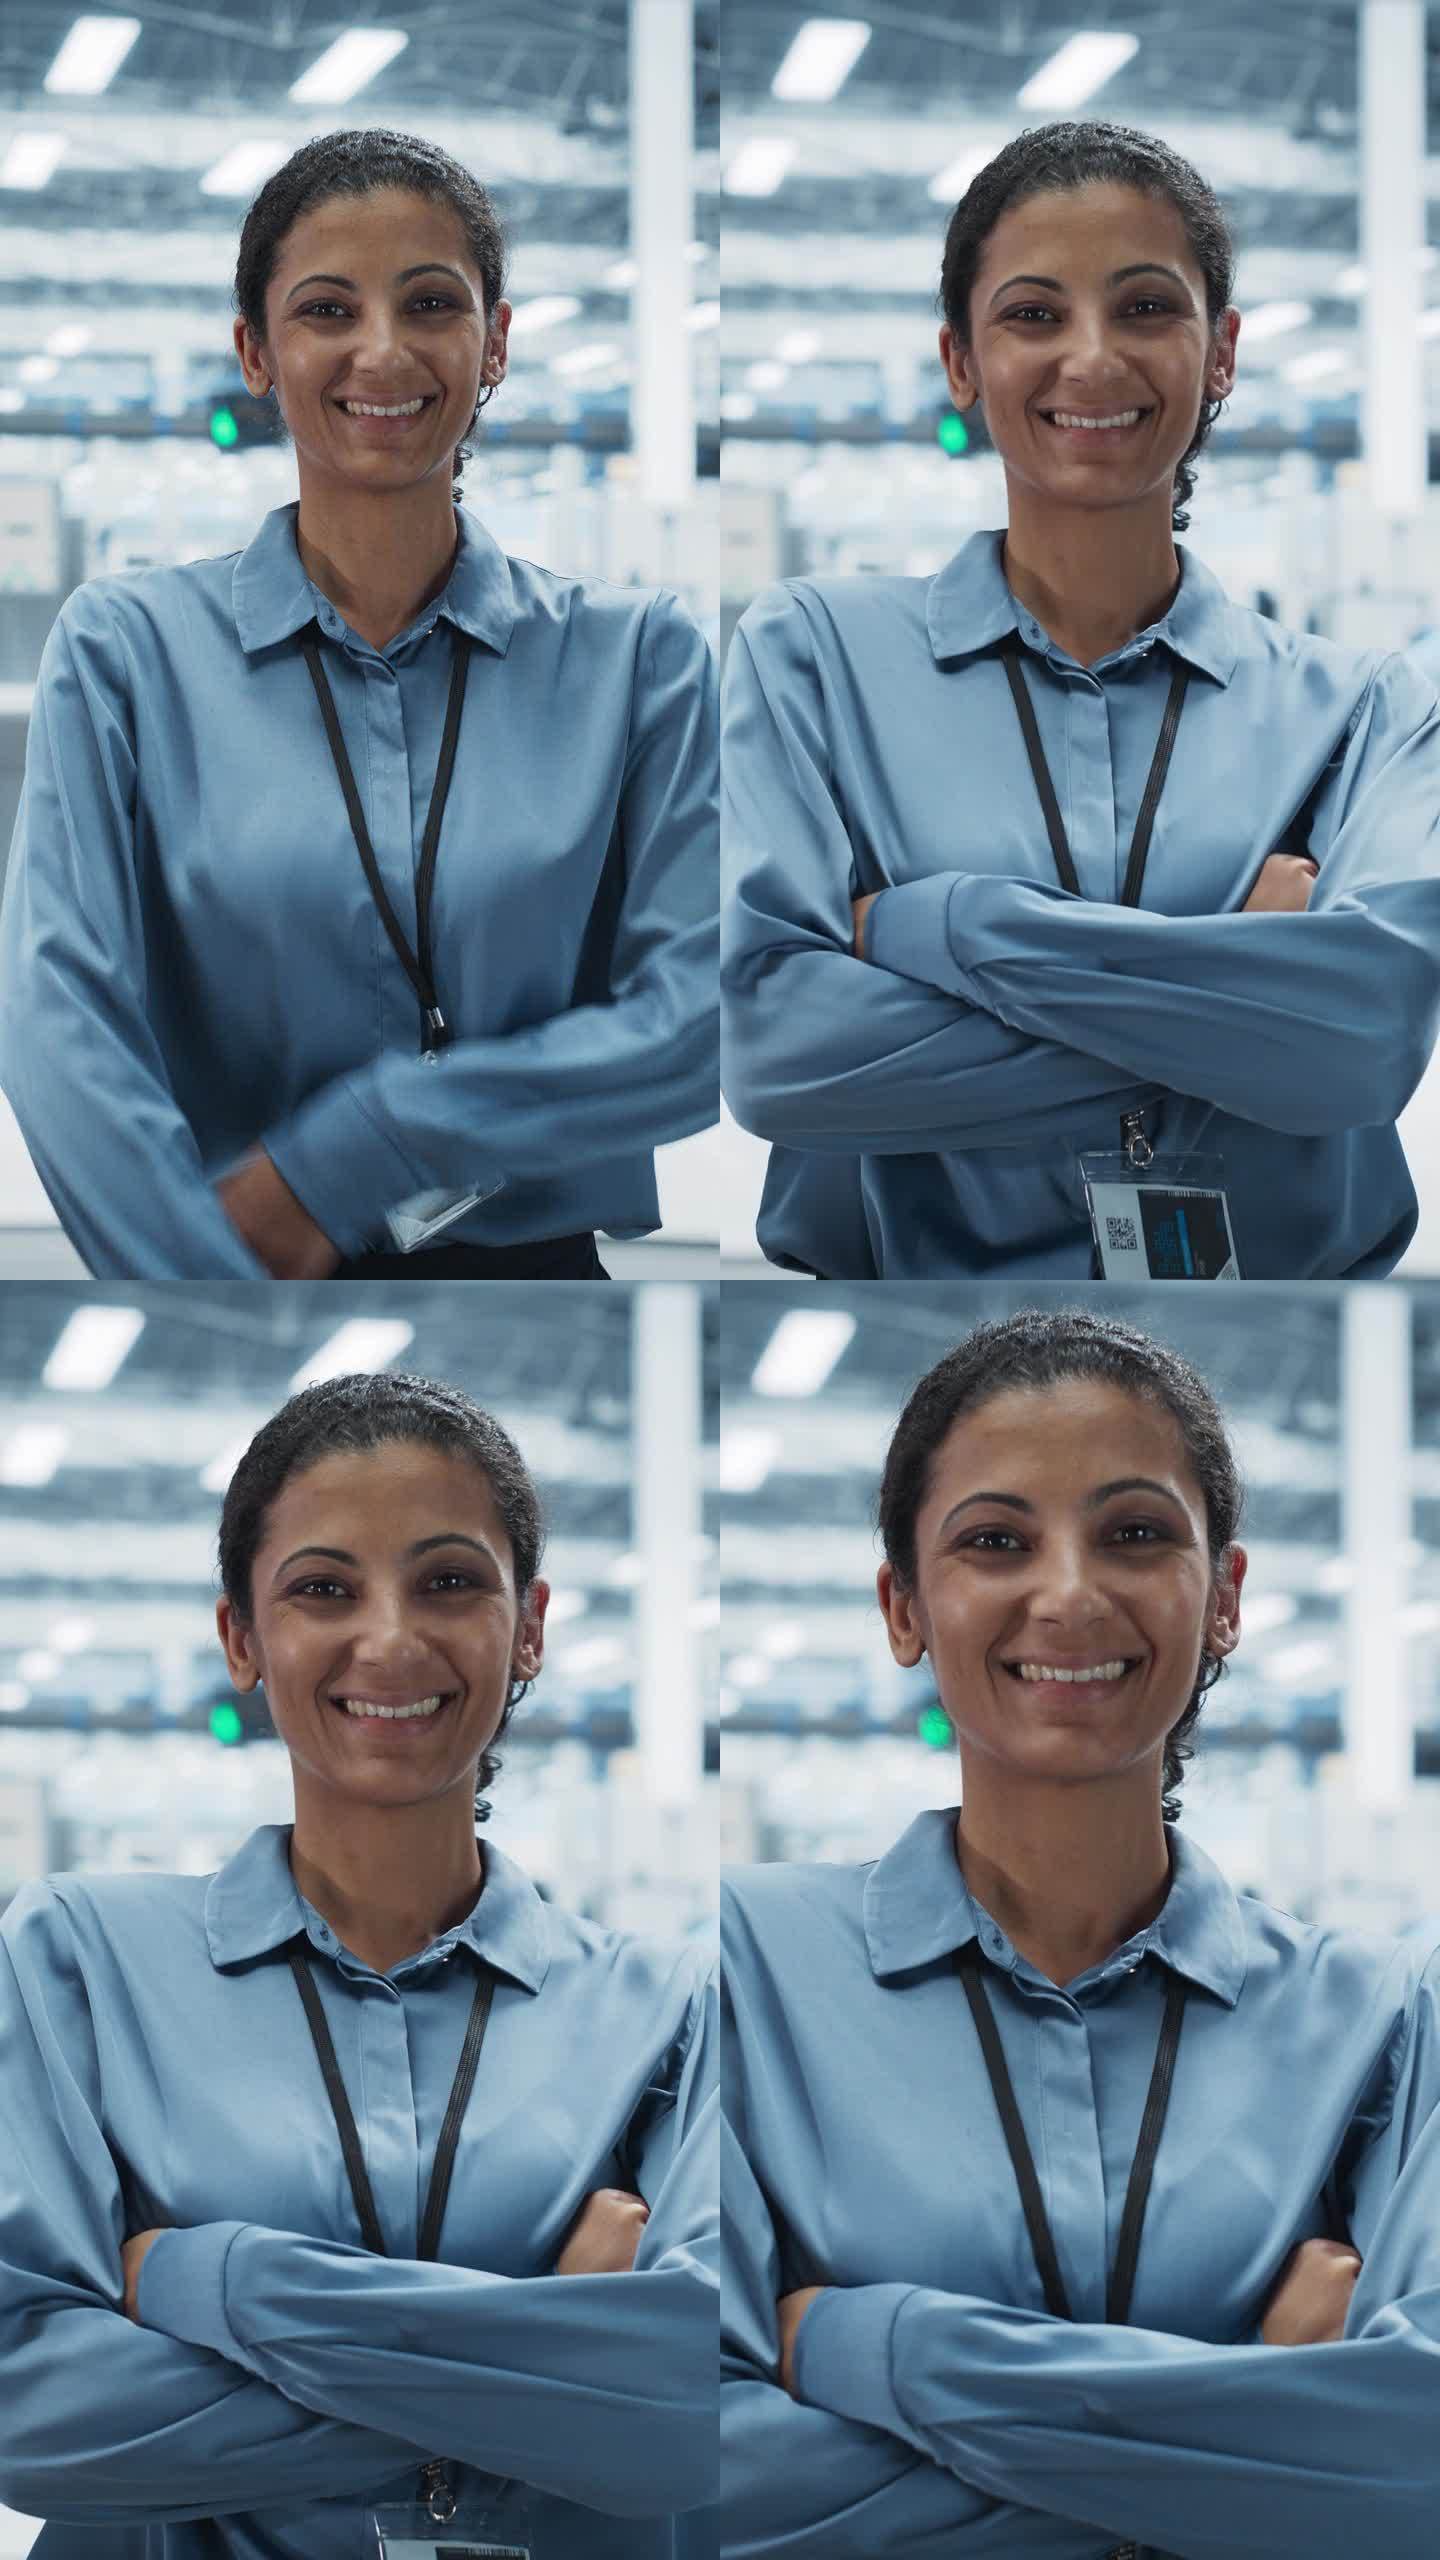 垂直屏幕:西班牙裔女性设施经理的肖像，双臂交叉站着，看着摄像机，微笑着。在一家自动电子厂生产电脑的专